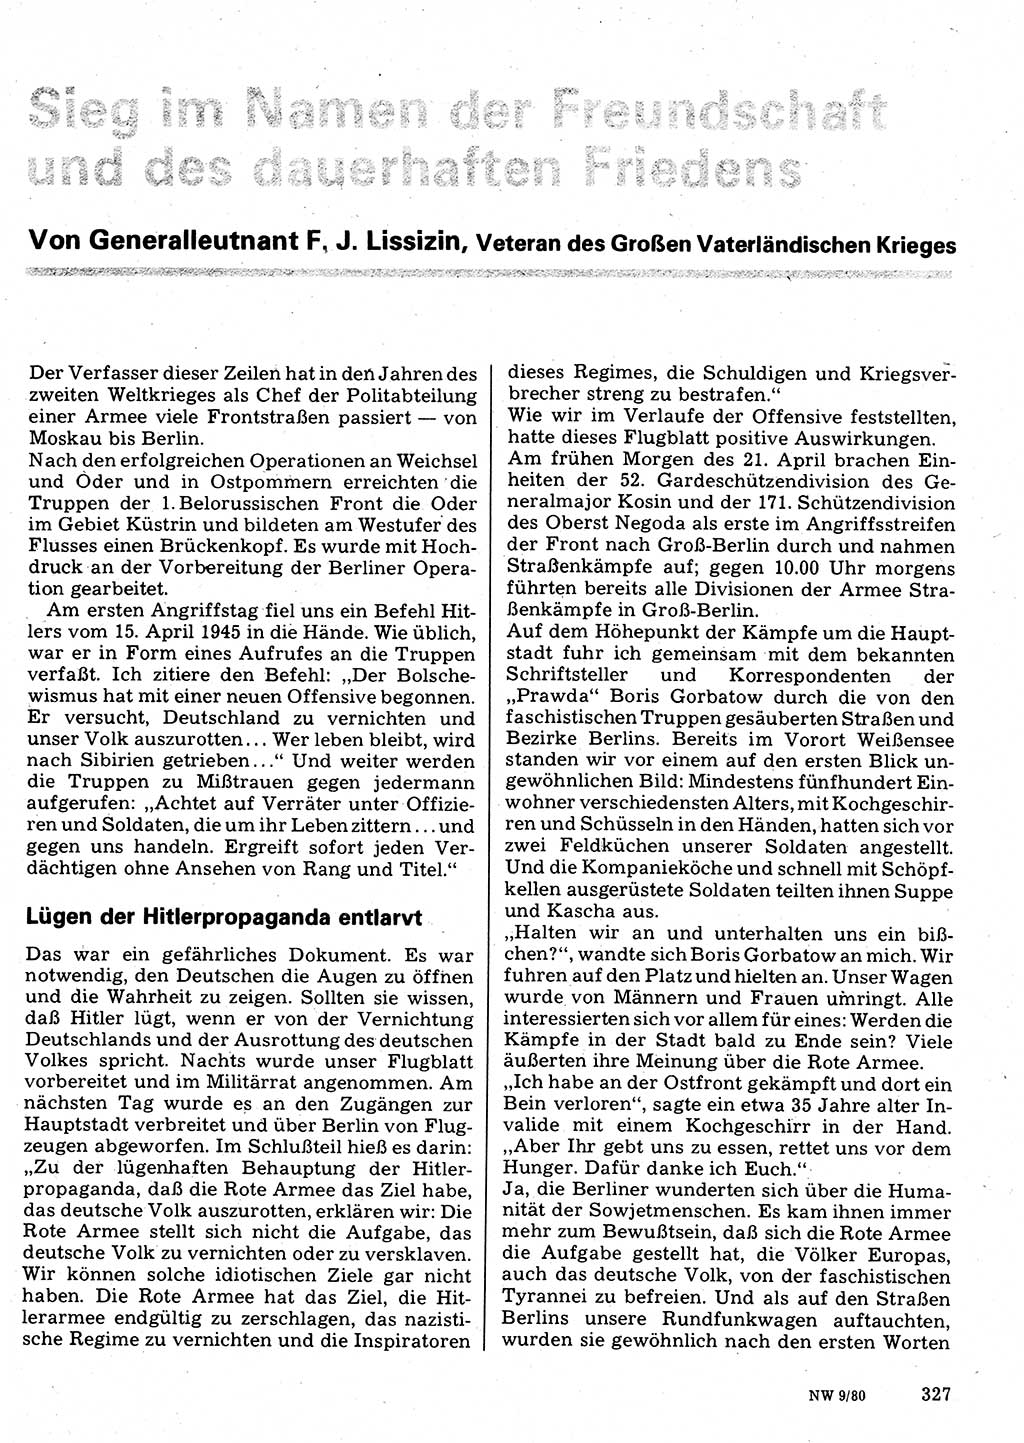 Neuer Weg (NW), Organ des Zentralkomitees (ZK) der SED (Sozialistische Einheitspartei Deutschlands) für Fragen des Parteilebens, 35. Jahrgang [Deutsche Demokratische Republik (DDR)] 1980, Seite 327 (NW ZK SED DDR 1980, S. 327)